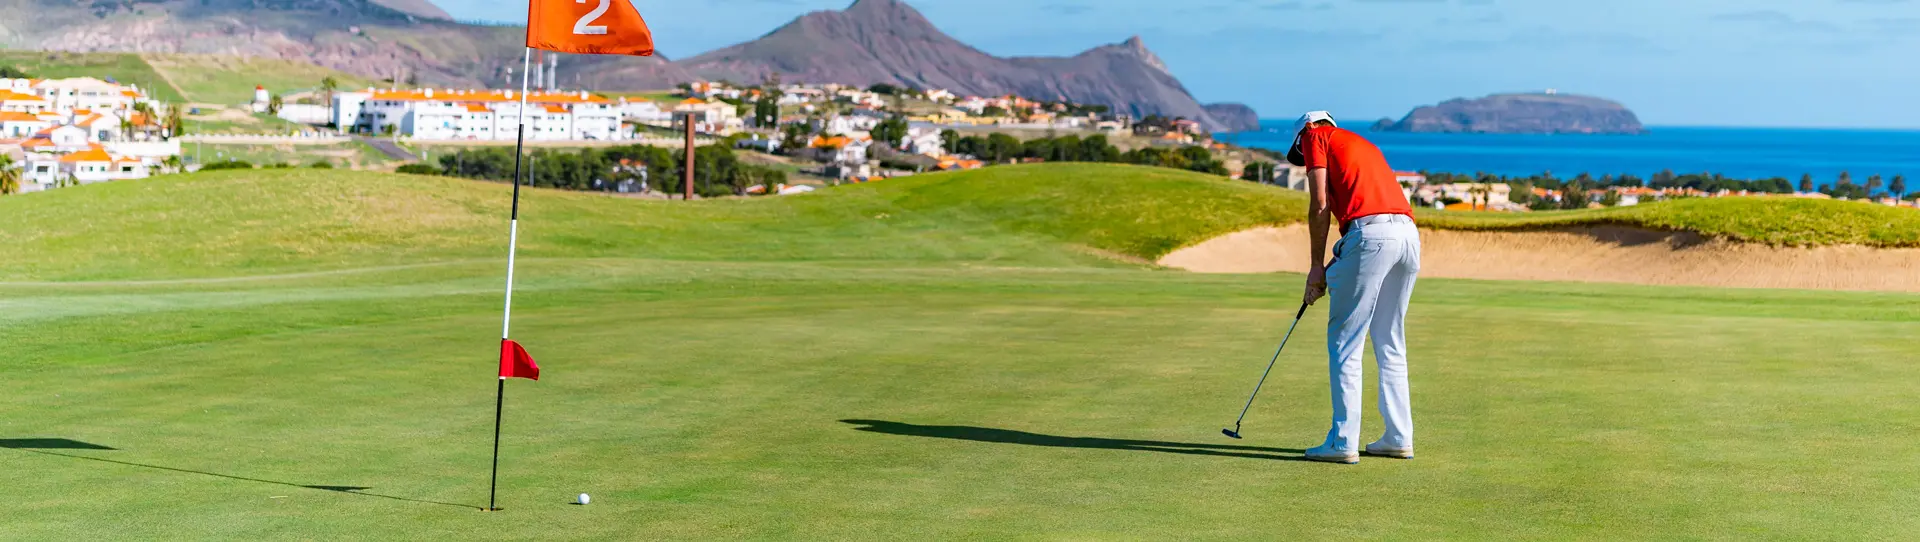 Portugal golf courses - Porto Santo Golfe - Photo 1